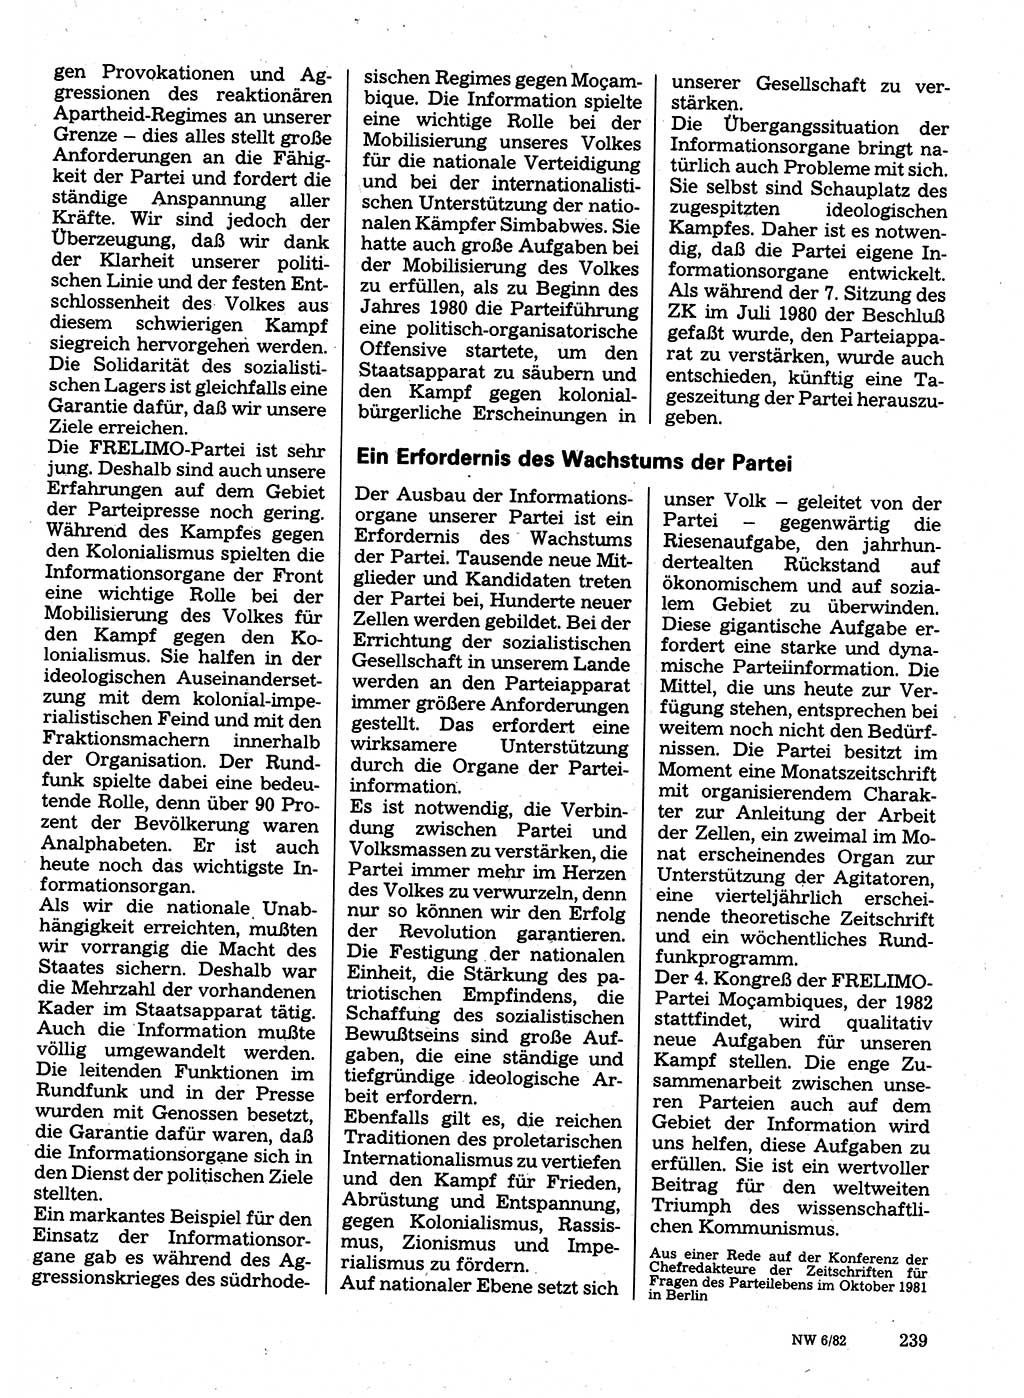 Neuer Weg (NW), Organ des Zentralkomitees (ZK) der SED (Sozialistische Einheitspartei Deutschlands) für Fragen des Parteilebens, 37. Jahrgang [Deutsche Demokratische Republik (DDR)] 1982, Seite 239 (NW ZK SED DDR 1982, S. 239)